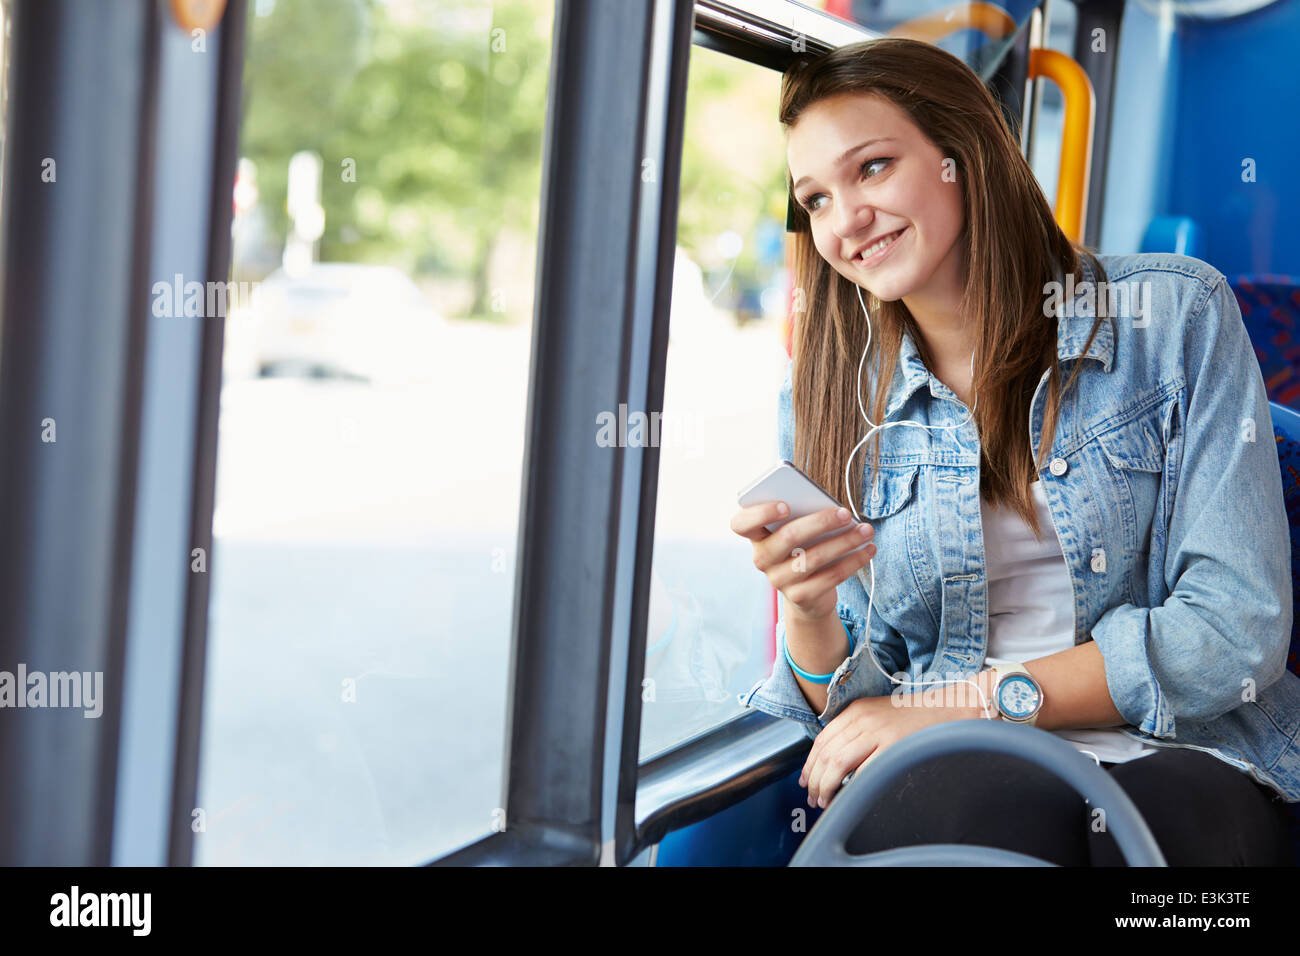 Adolescente portando auriculares para escuchar música en el bus Foto de stock